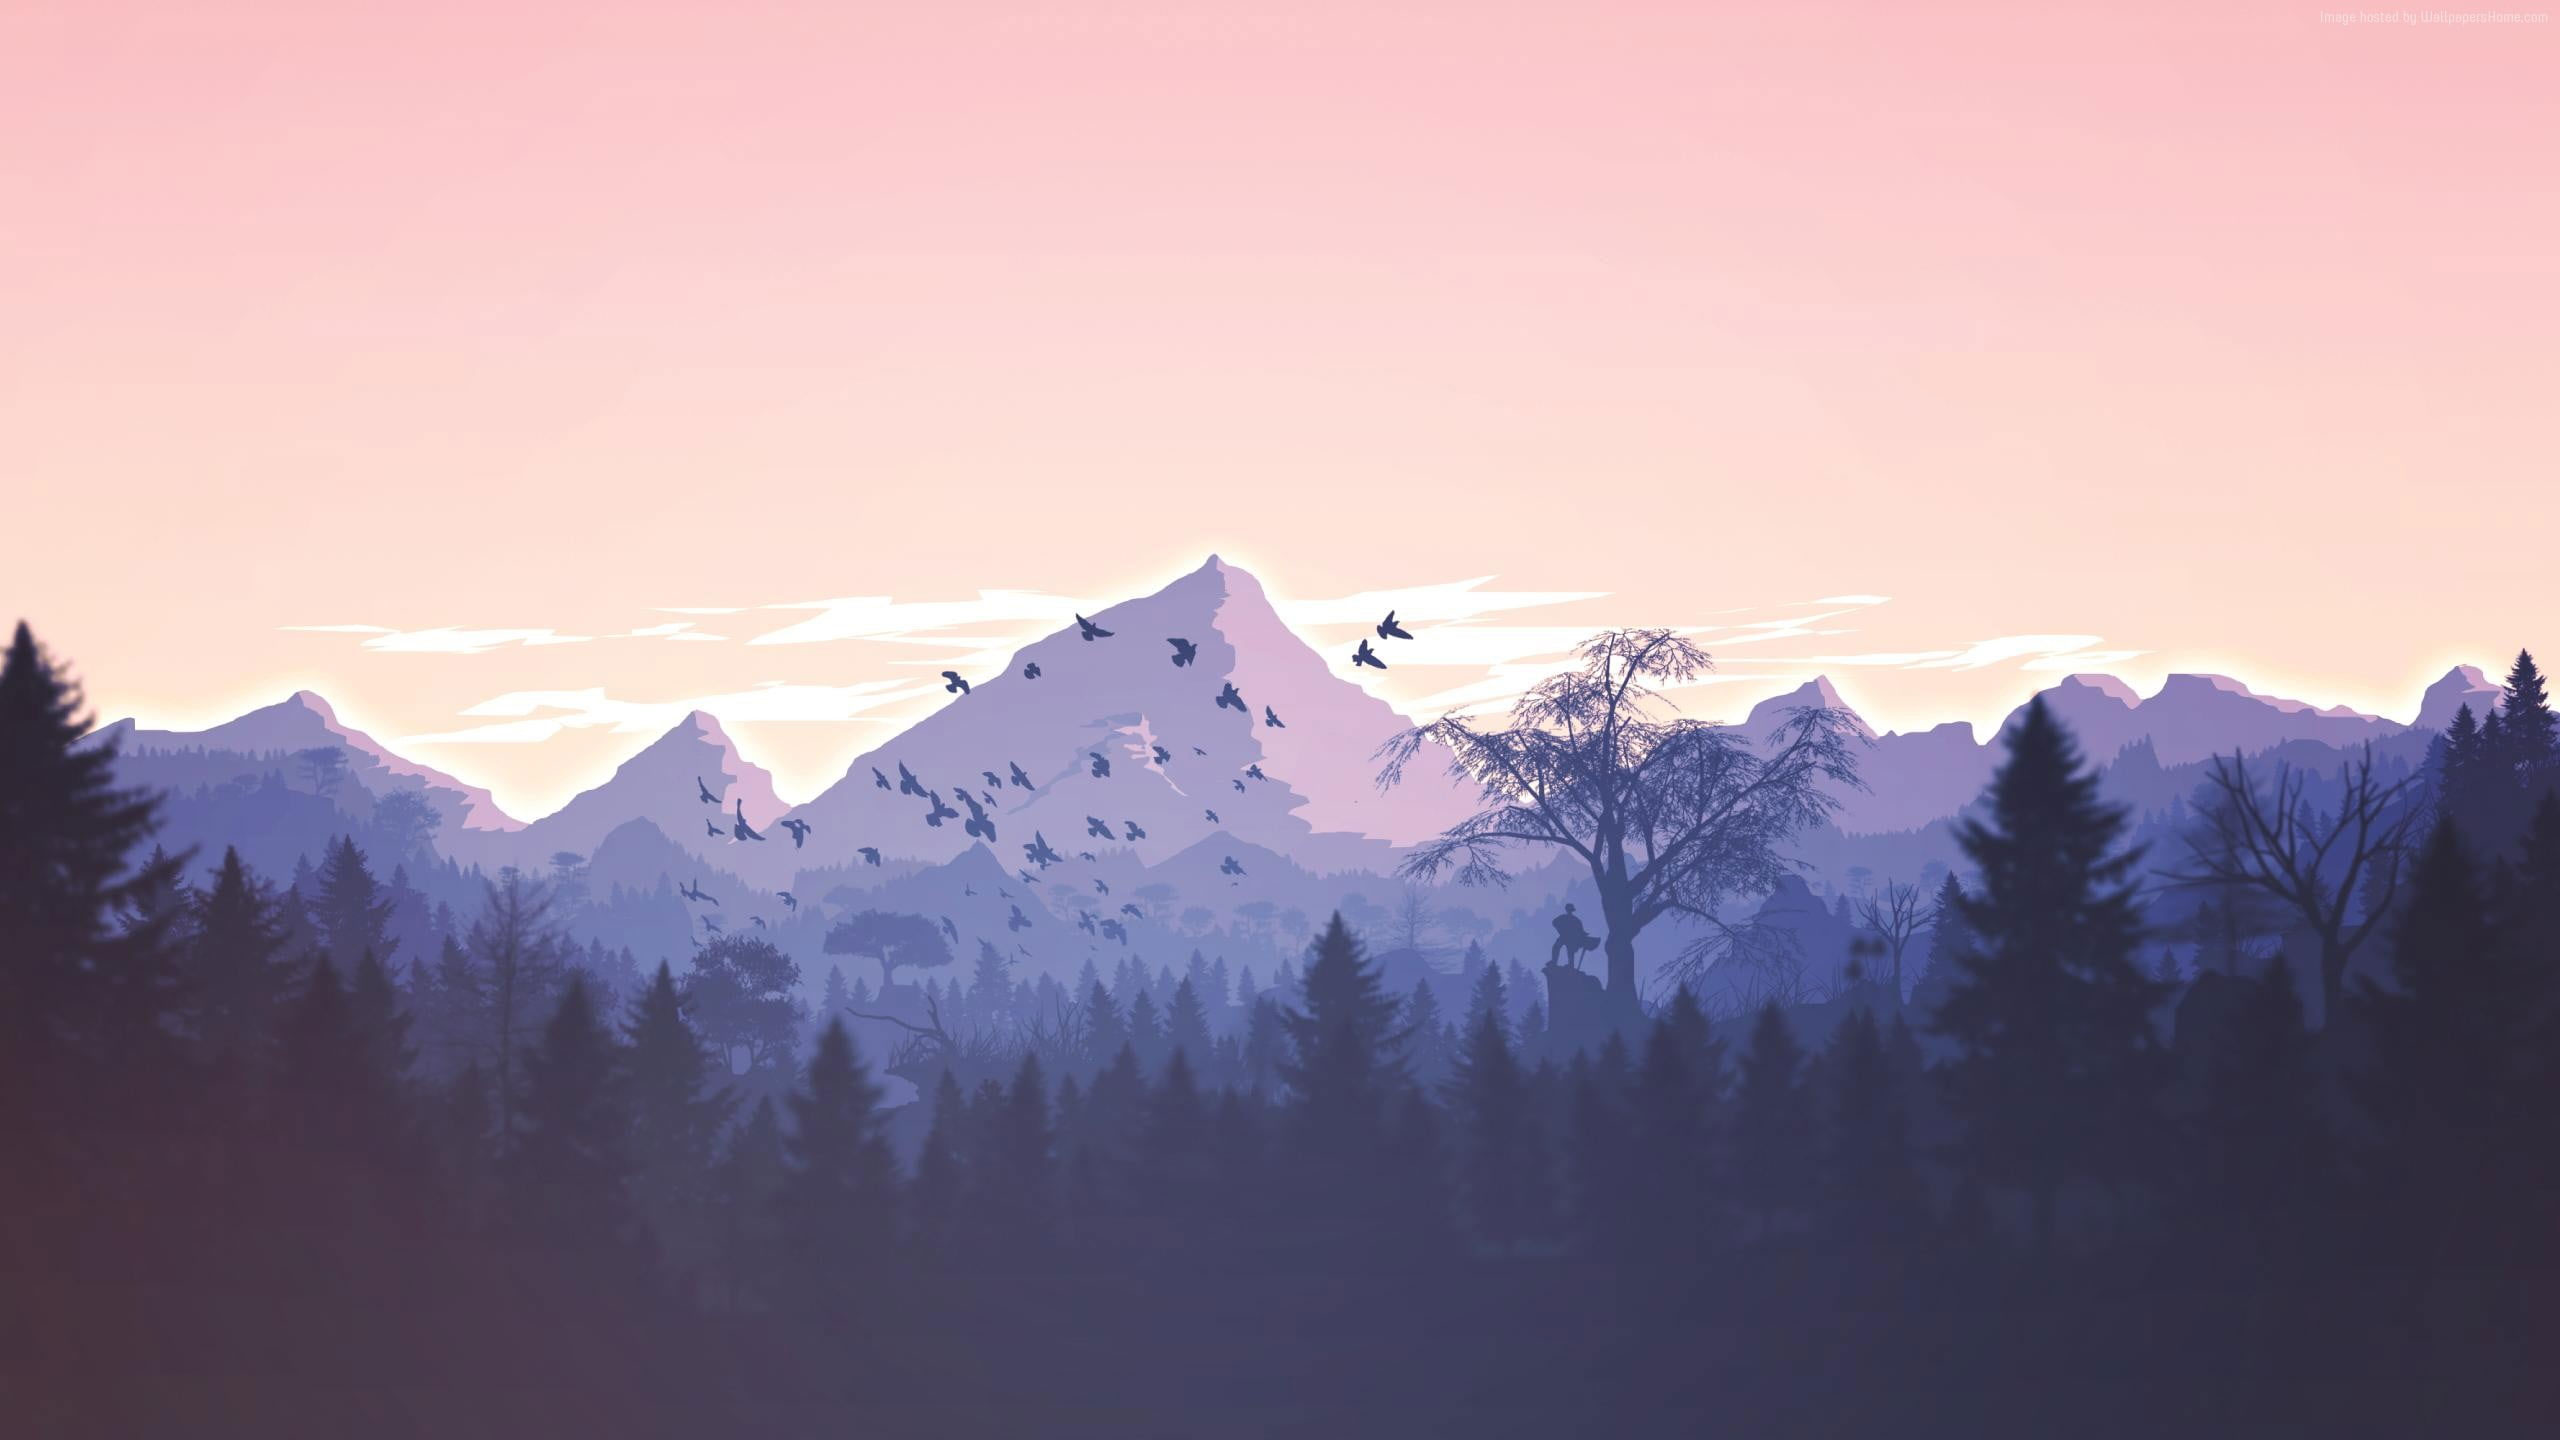 Mountain And Forest Wallpaper, Digital Art, Landscape, Mountains, Fan Art -  Wallpaperforu